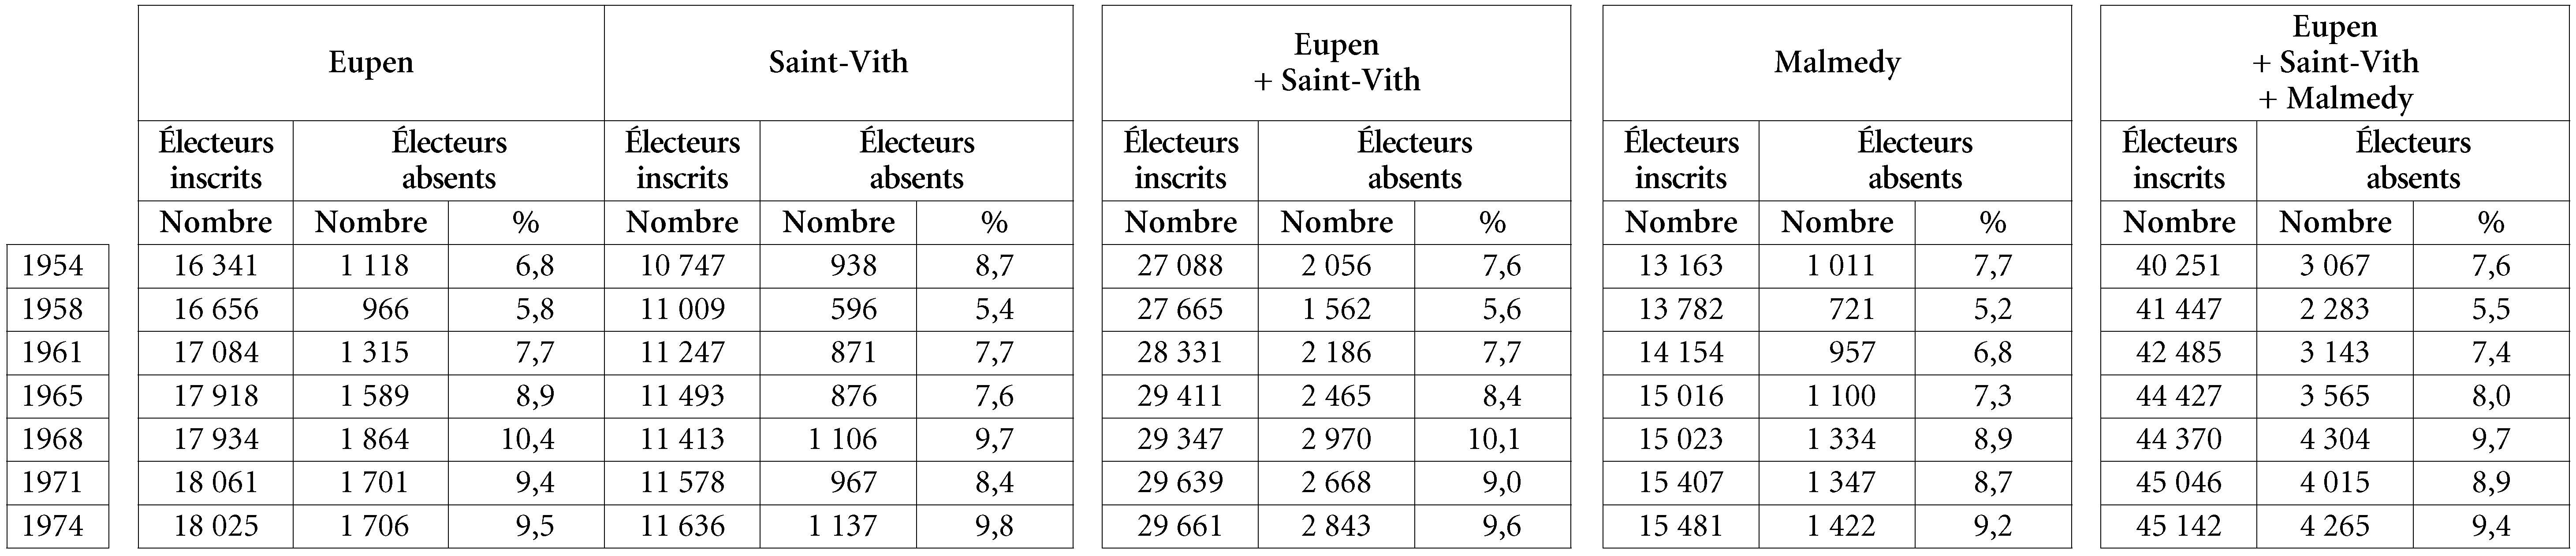 Tableau A4. Élection de la Chambre des représentants dans les cantons d’Eupen, de Saint-Vith et de Malmedy (1954-1974). Taux d’absentéisme